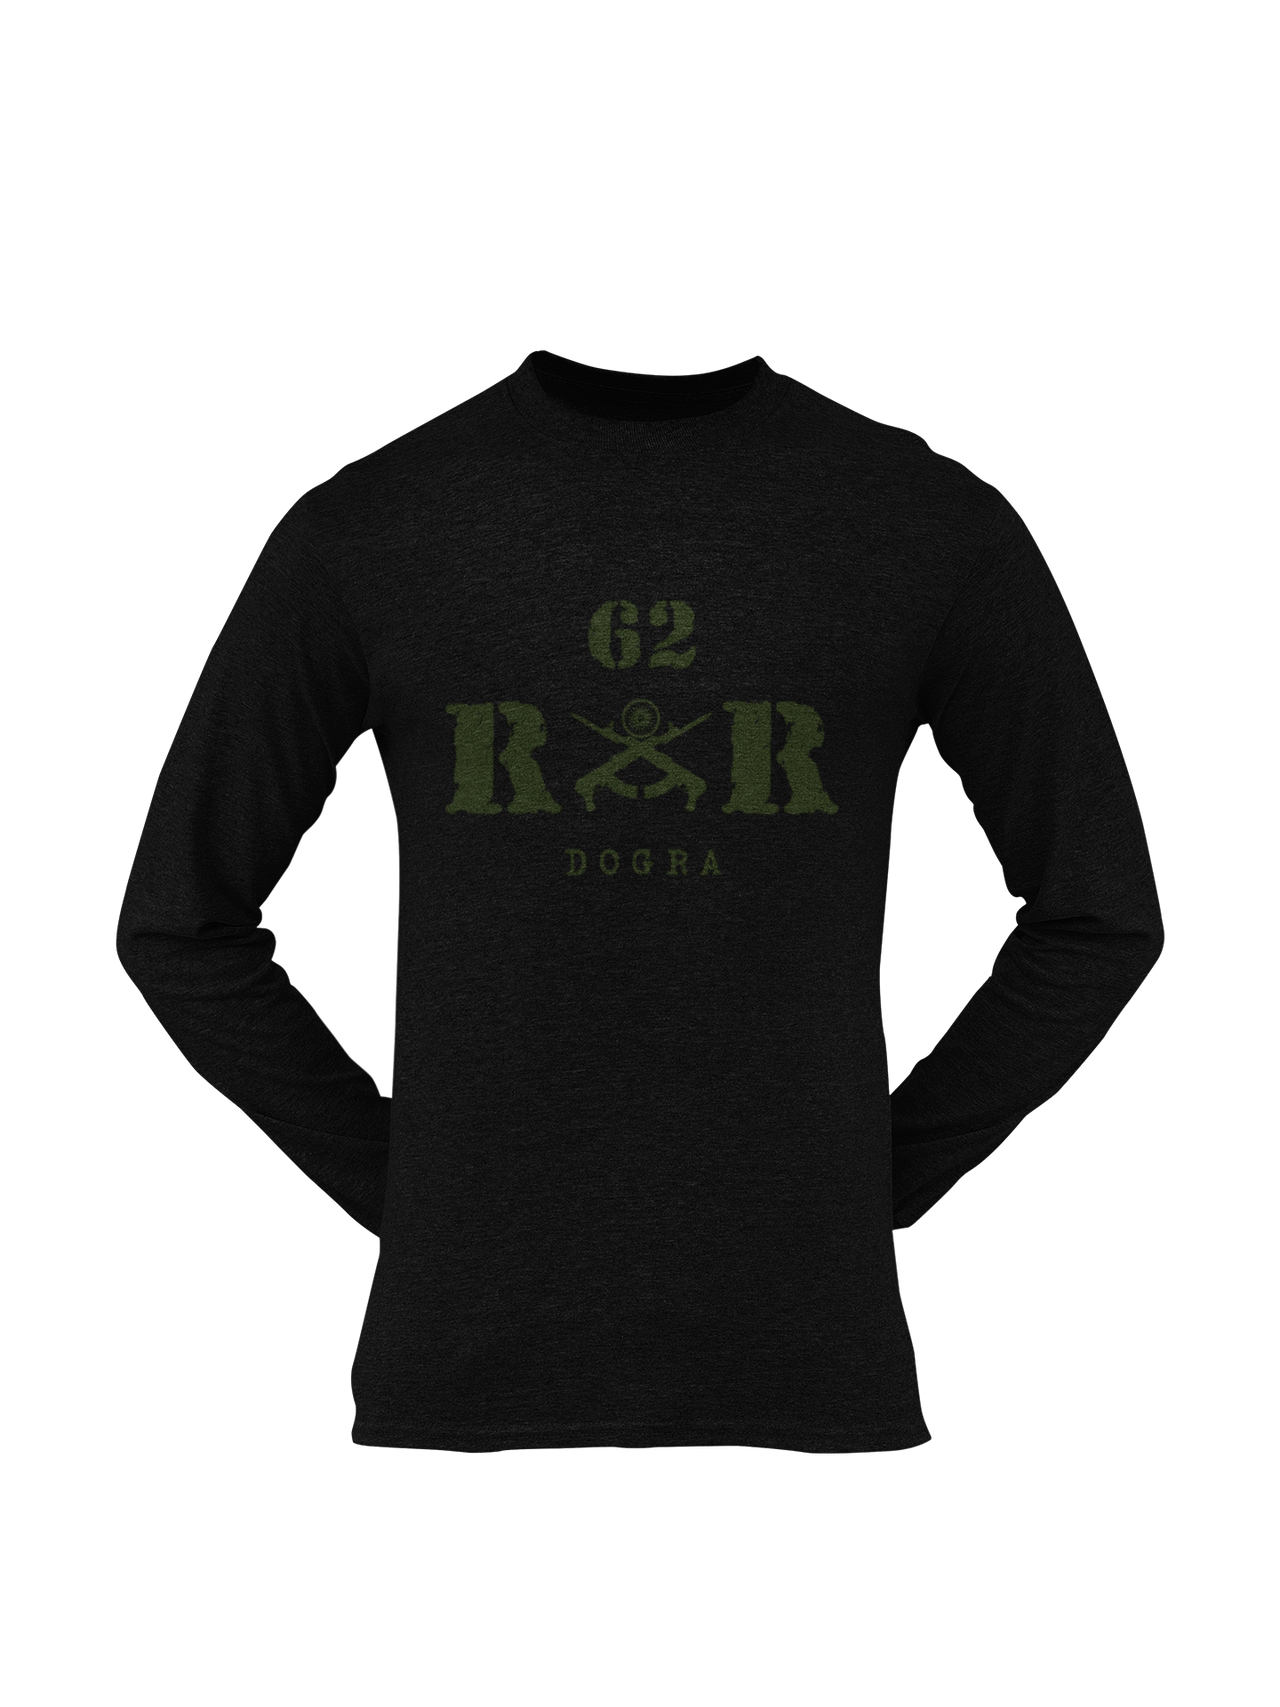 Rashtriya Rifles T-shirt - 62 RR Dogra (Men)